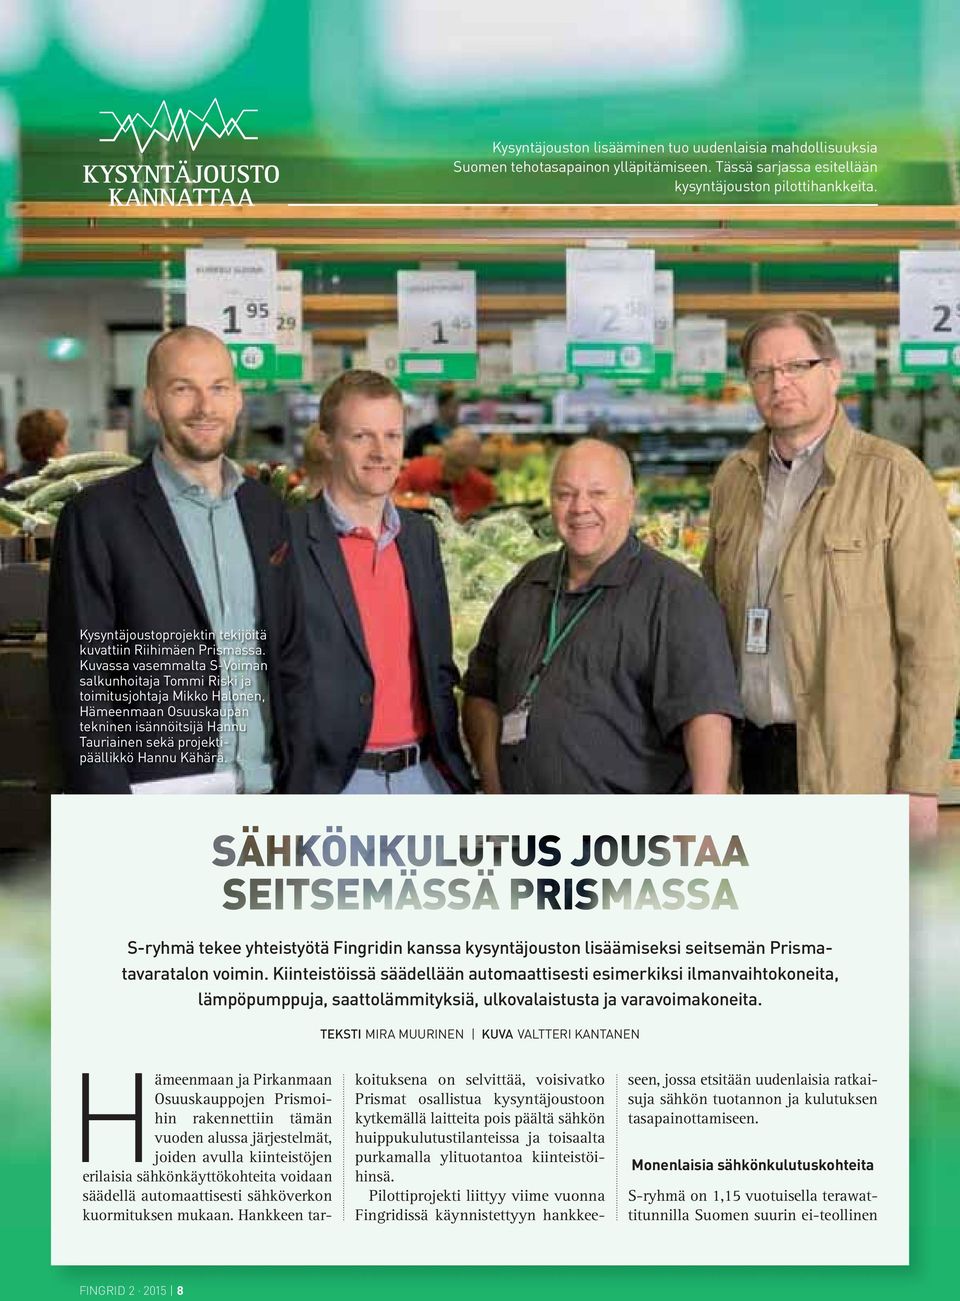 Kuvassa vasemmalta S-Voiman salkunhoitaja Tommi Riski ja toimitusjohtaja Mikko Halonen, Hämeenmaan Osuuskaupan tekninen isännöitsijä Hannu Tauriainen sekä projektipäällikkö Hannu Kähärä.